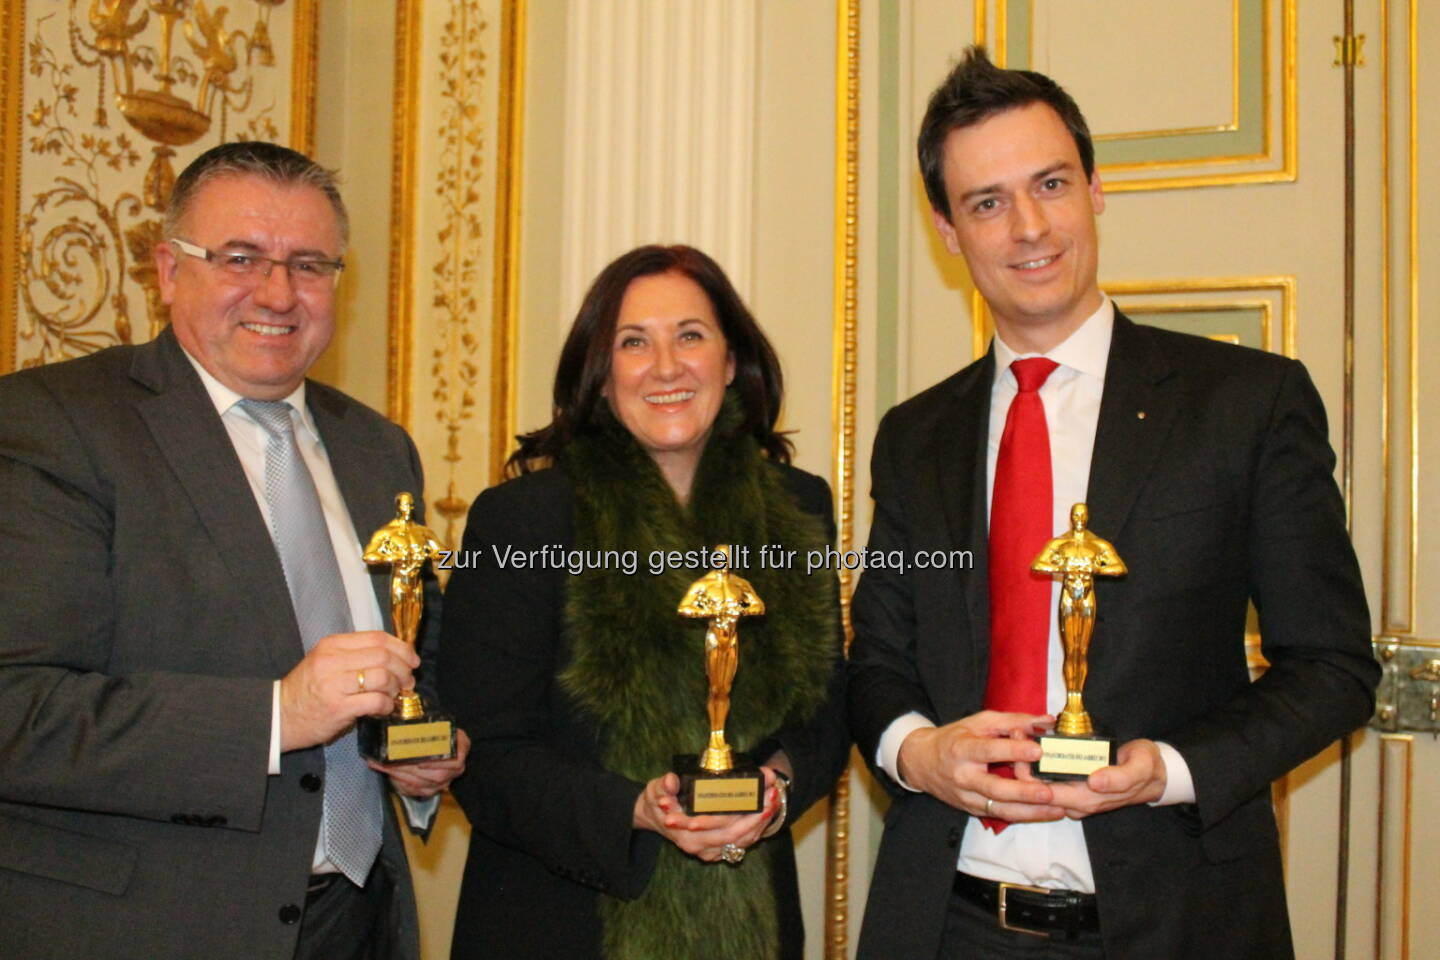 Finanzberater des Jahres 2013: Herbert Loidolt, Monika Kopf, Markus Leyacker-Schatzl